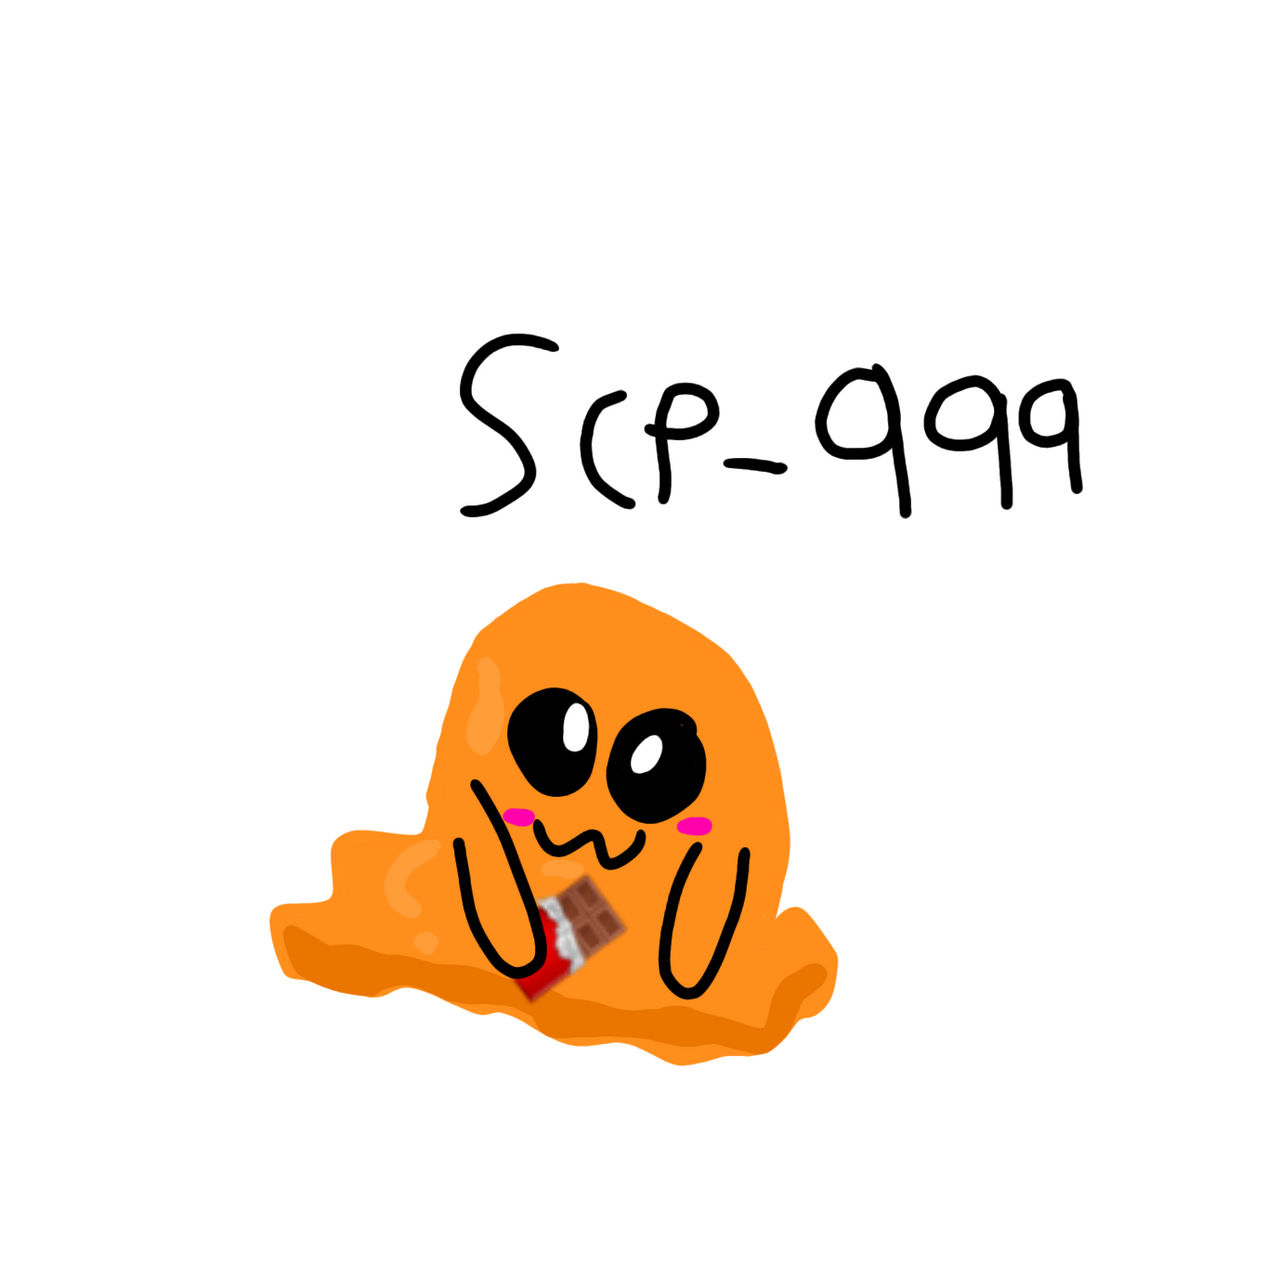 SCPlump-999 The Tickle Monster by PlumpNostrum on DeviantArt